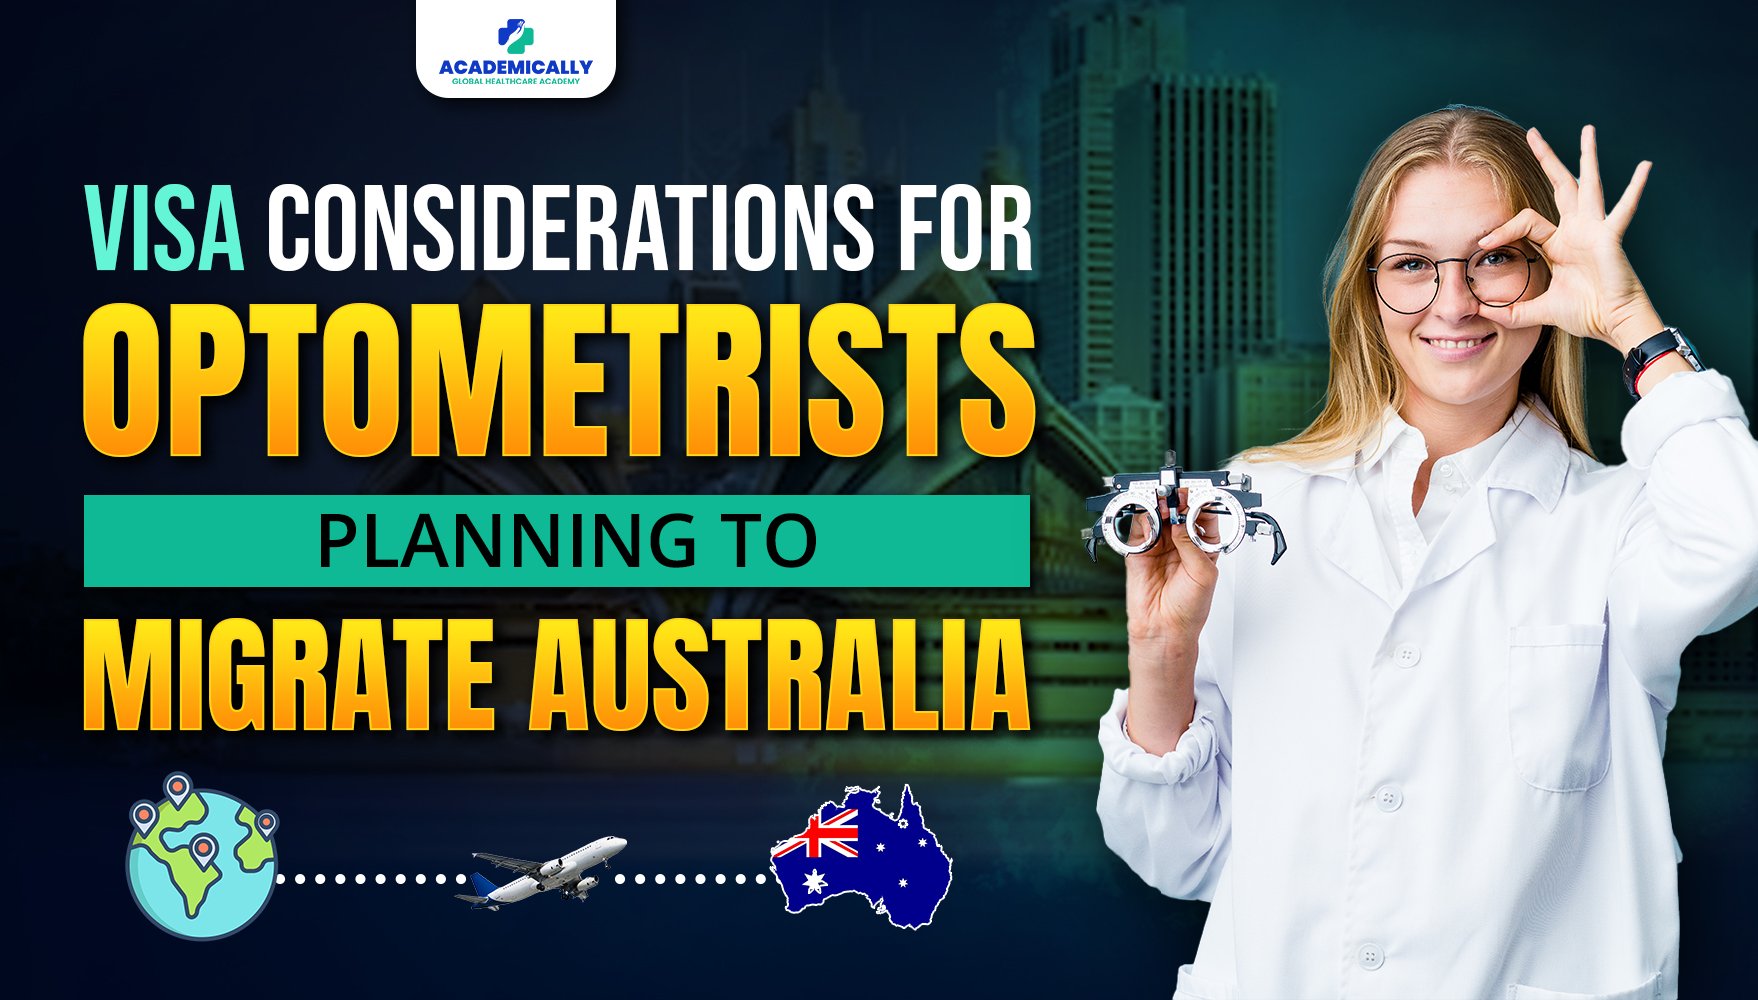 Migration to Australia as an Optometrist